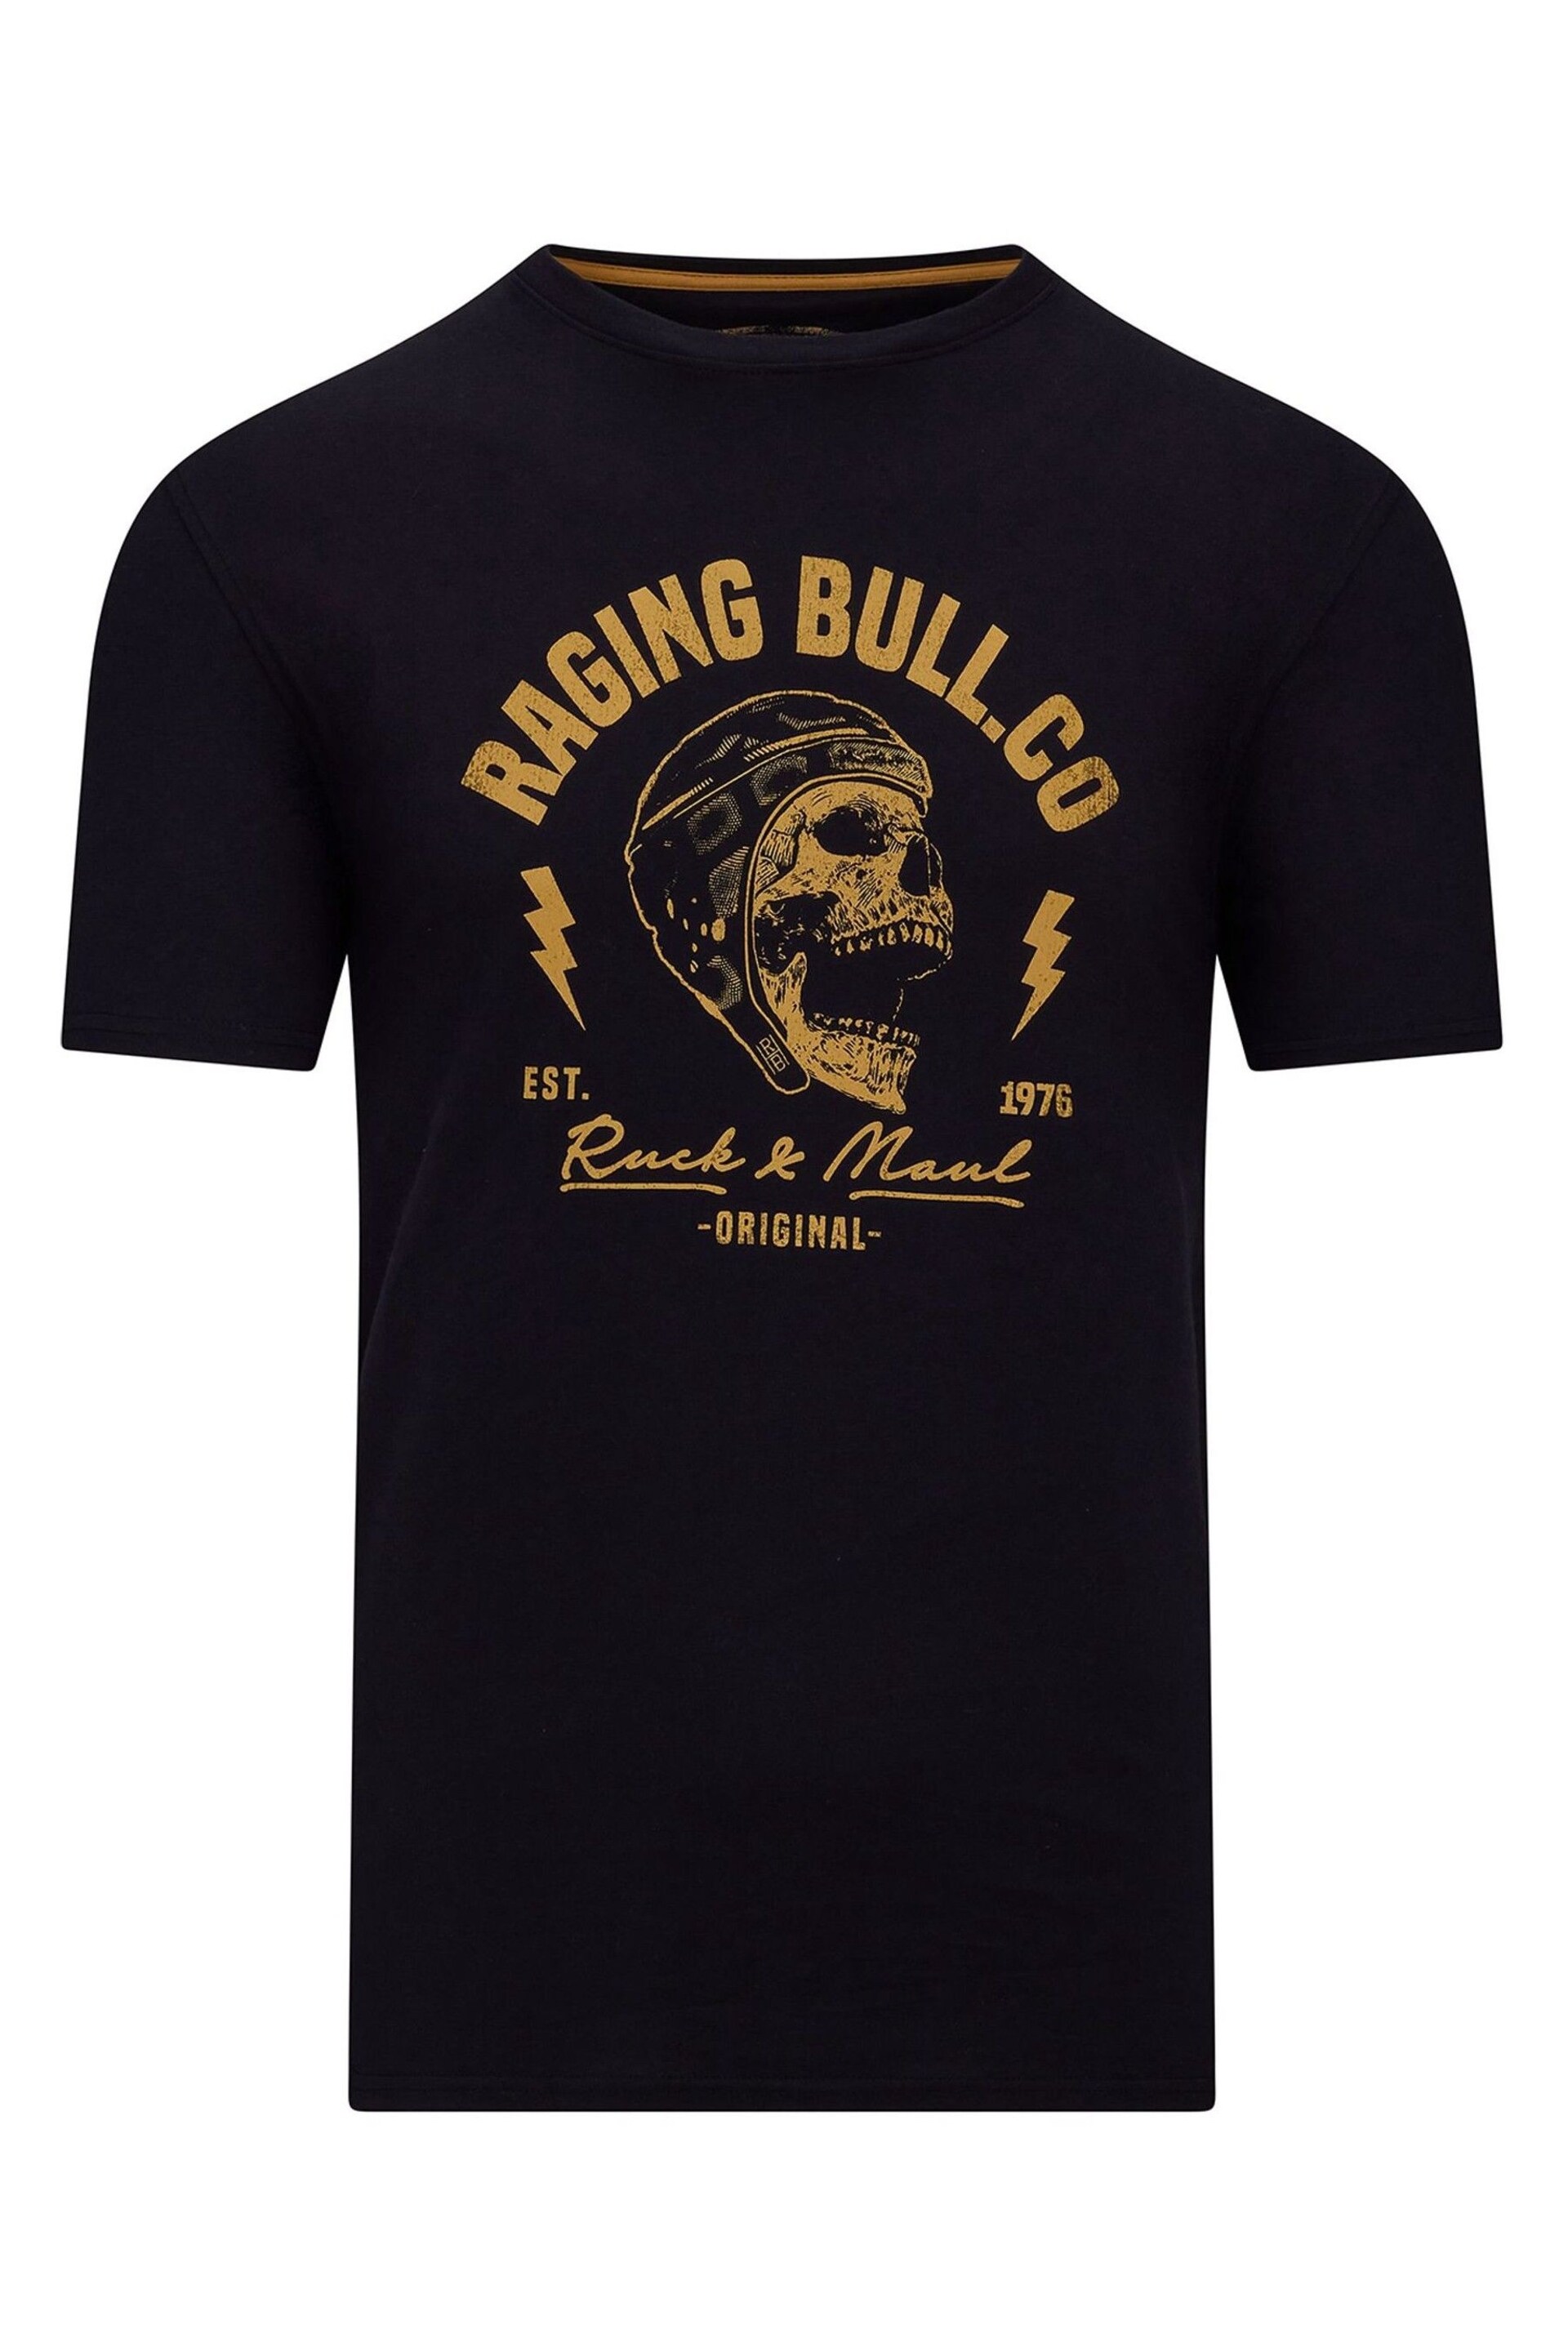 Raging Bull Ruck & Maul Black T-Shirt - Image 5 of 5